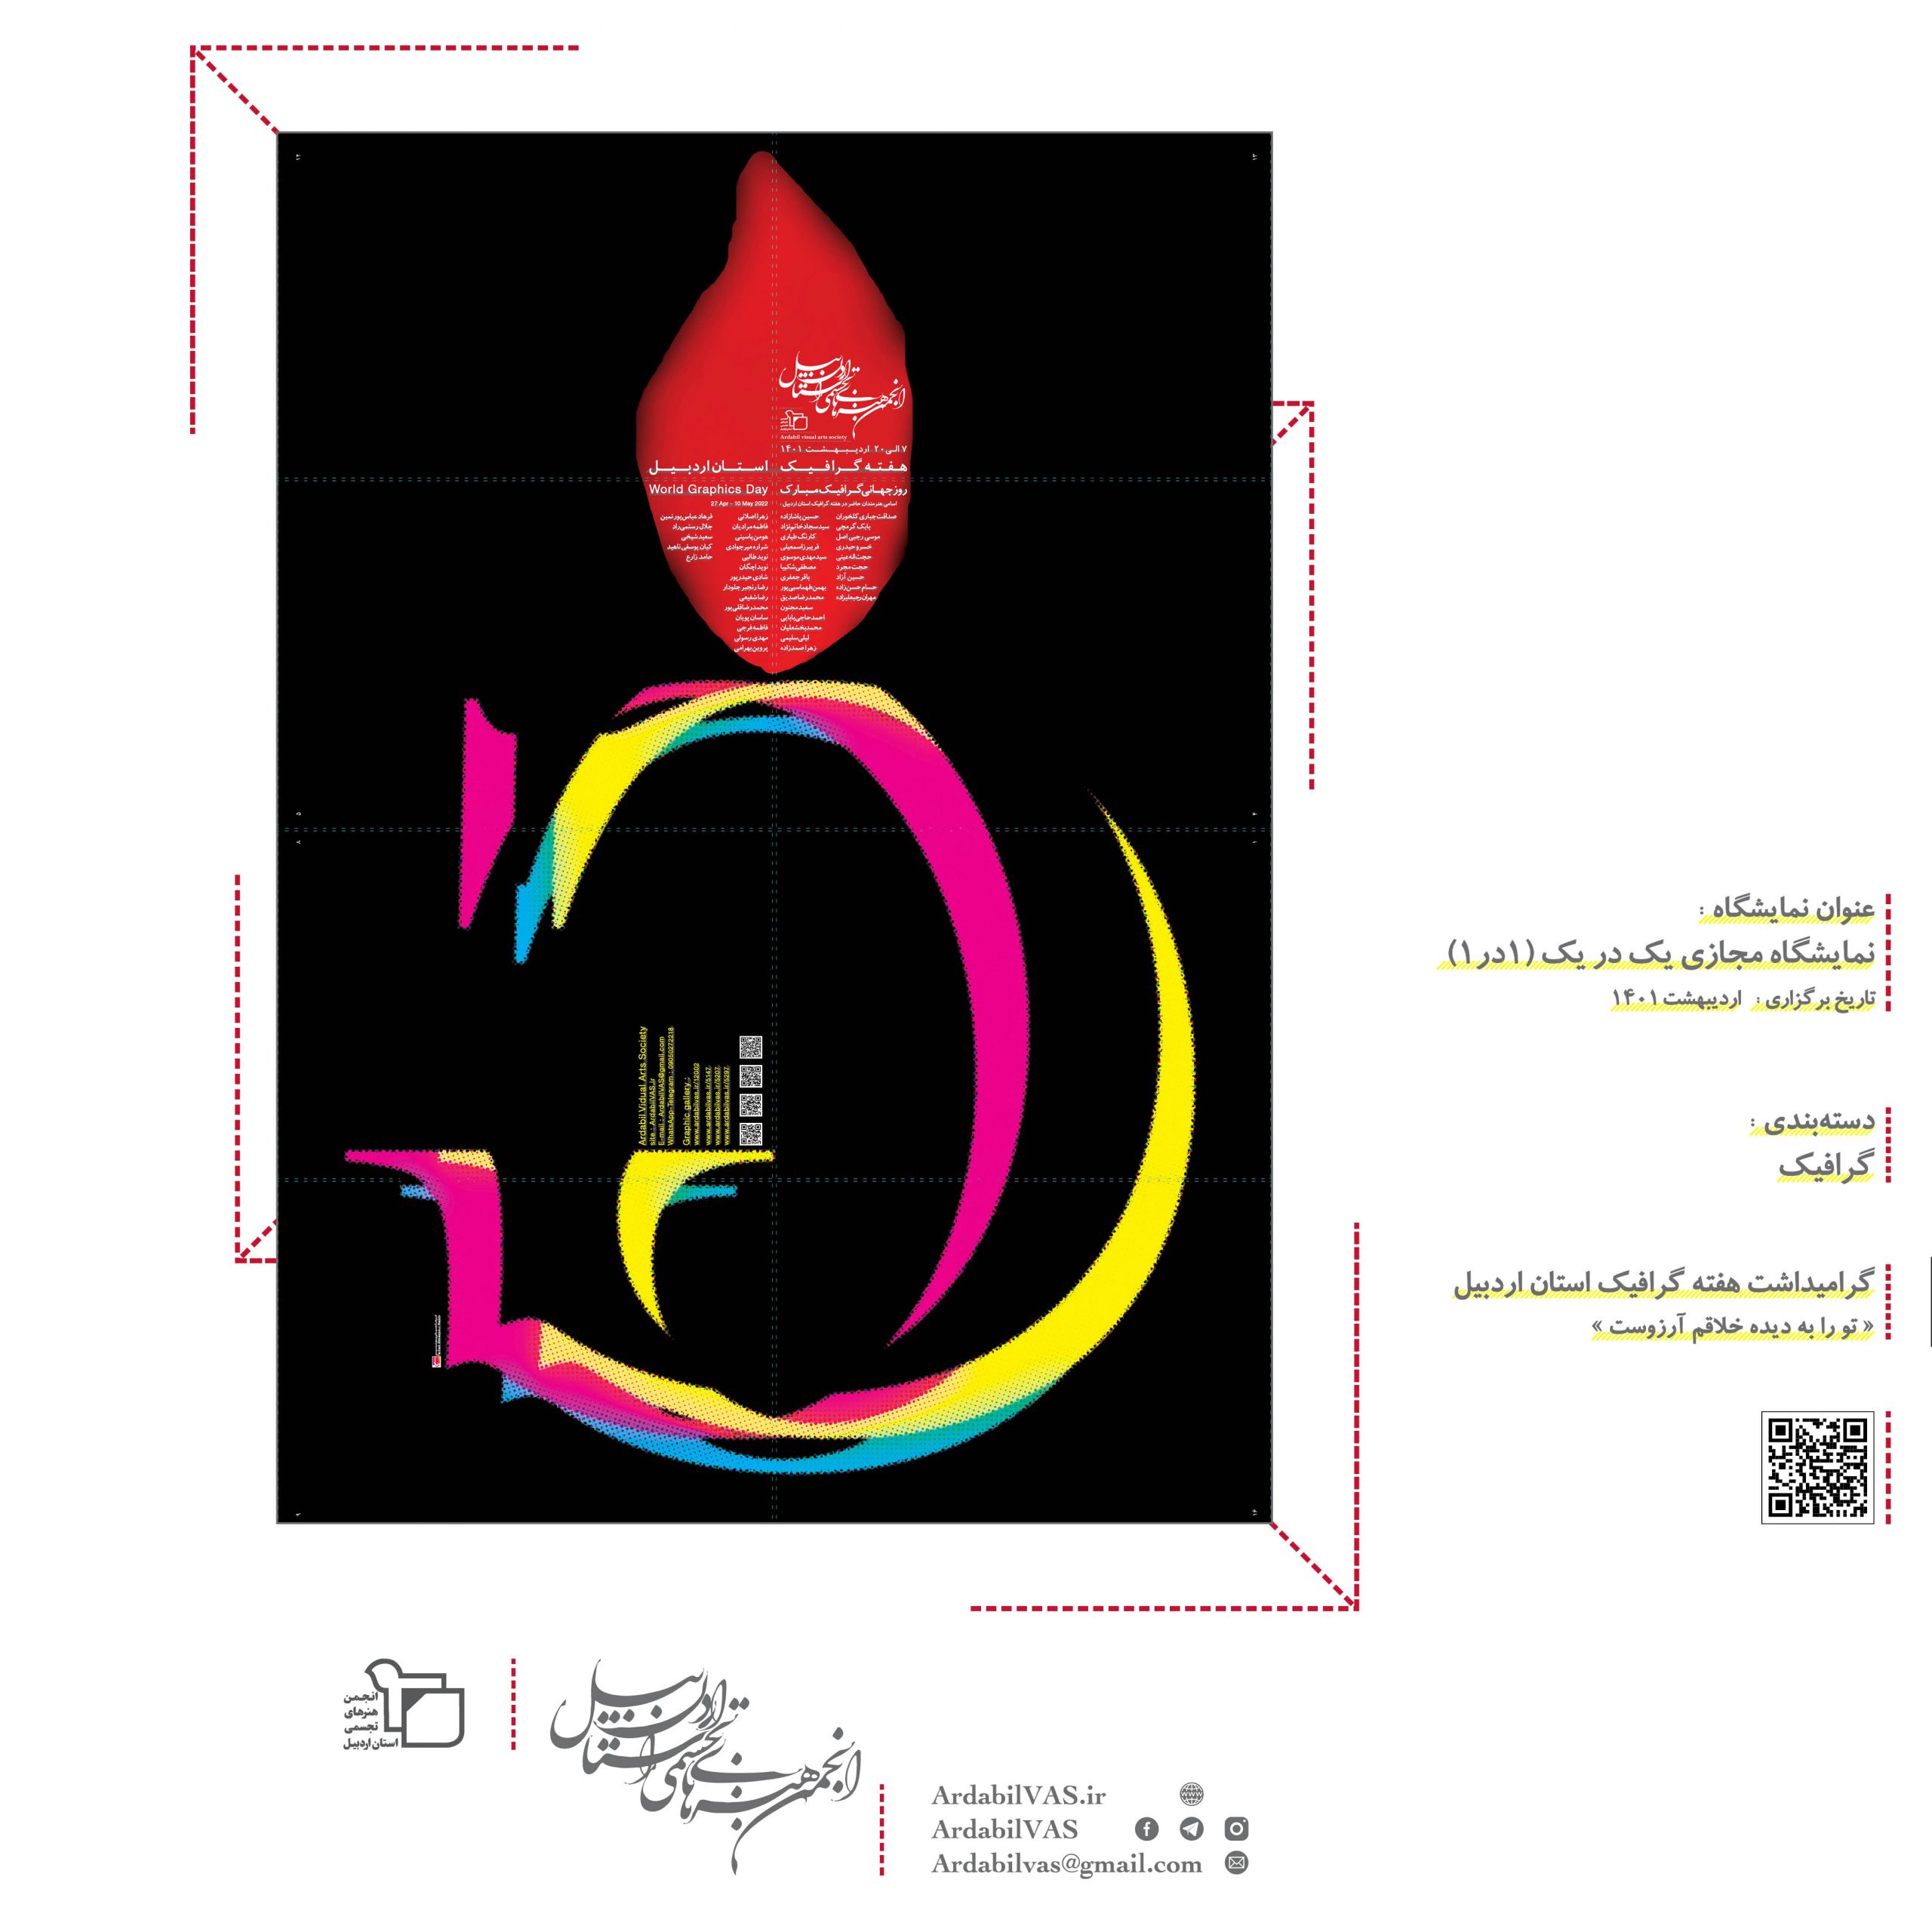 نمایشگاه مجازی یک در یک ـ هفته گرافیک استان اردبیل